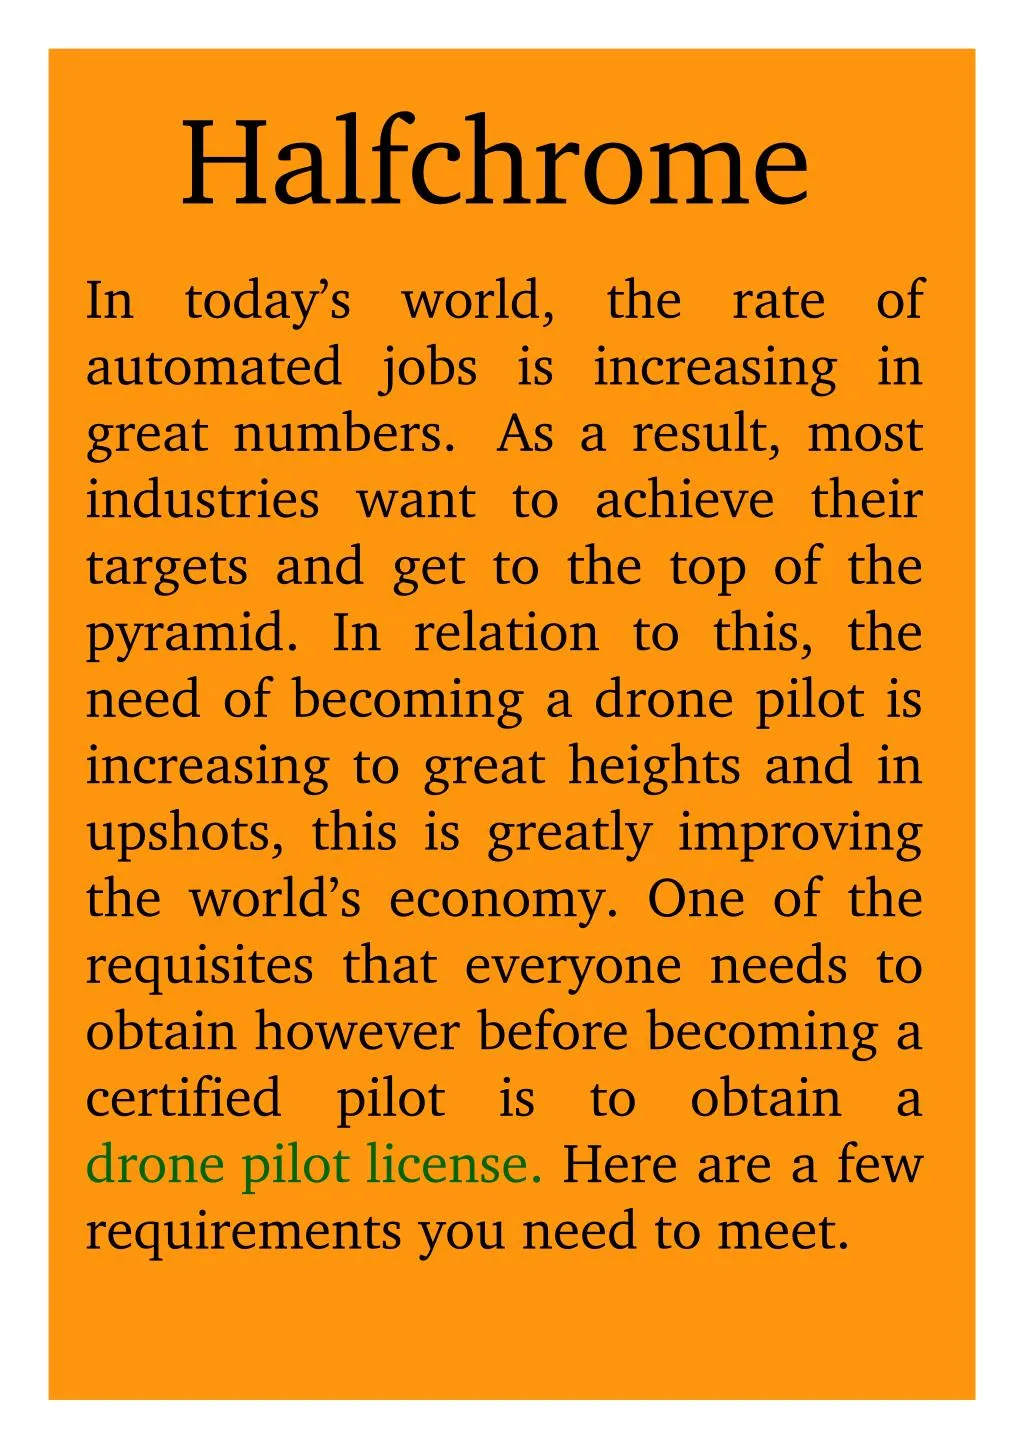 drone pilot license louisiana